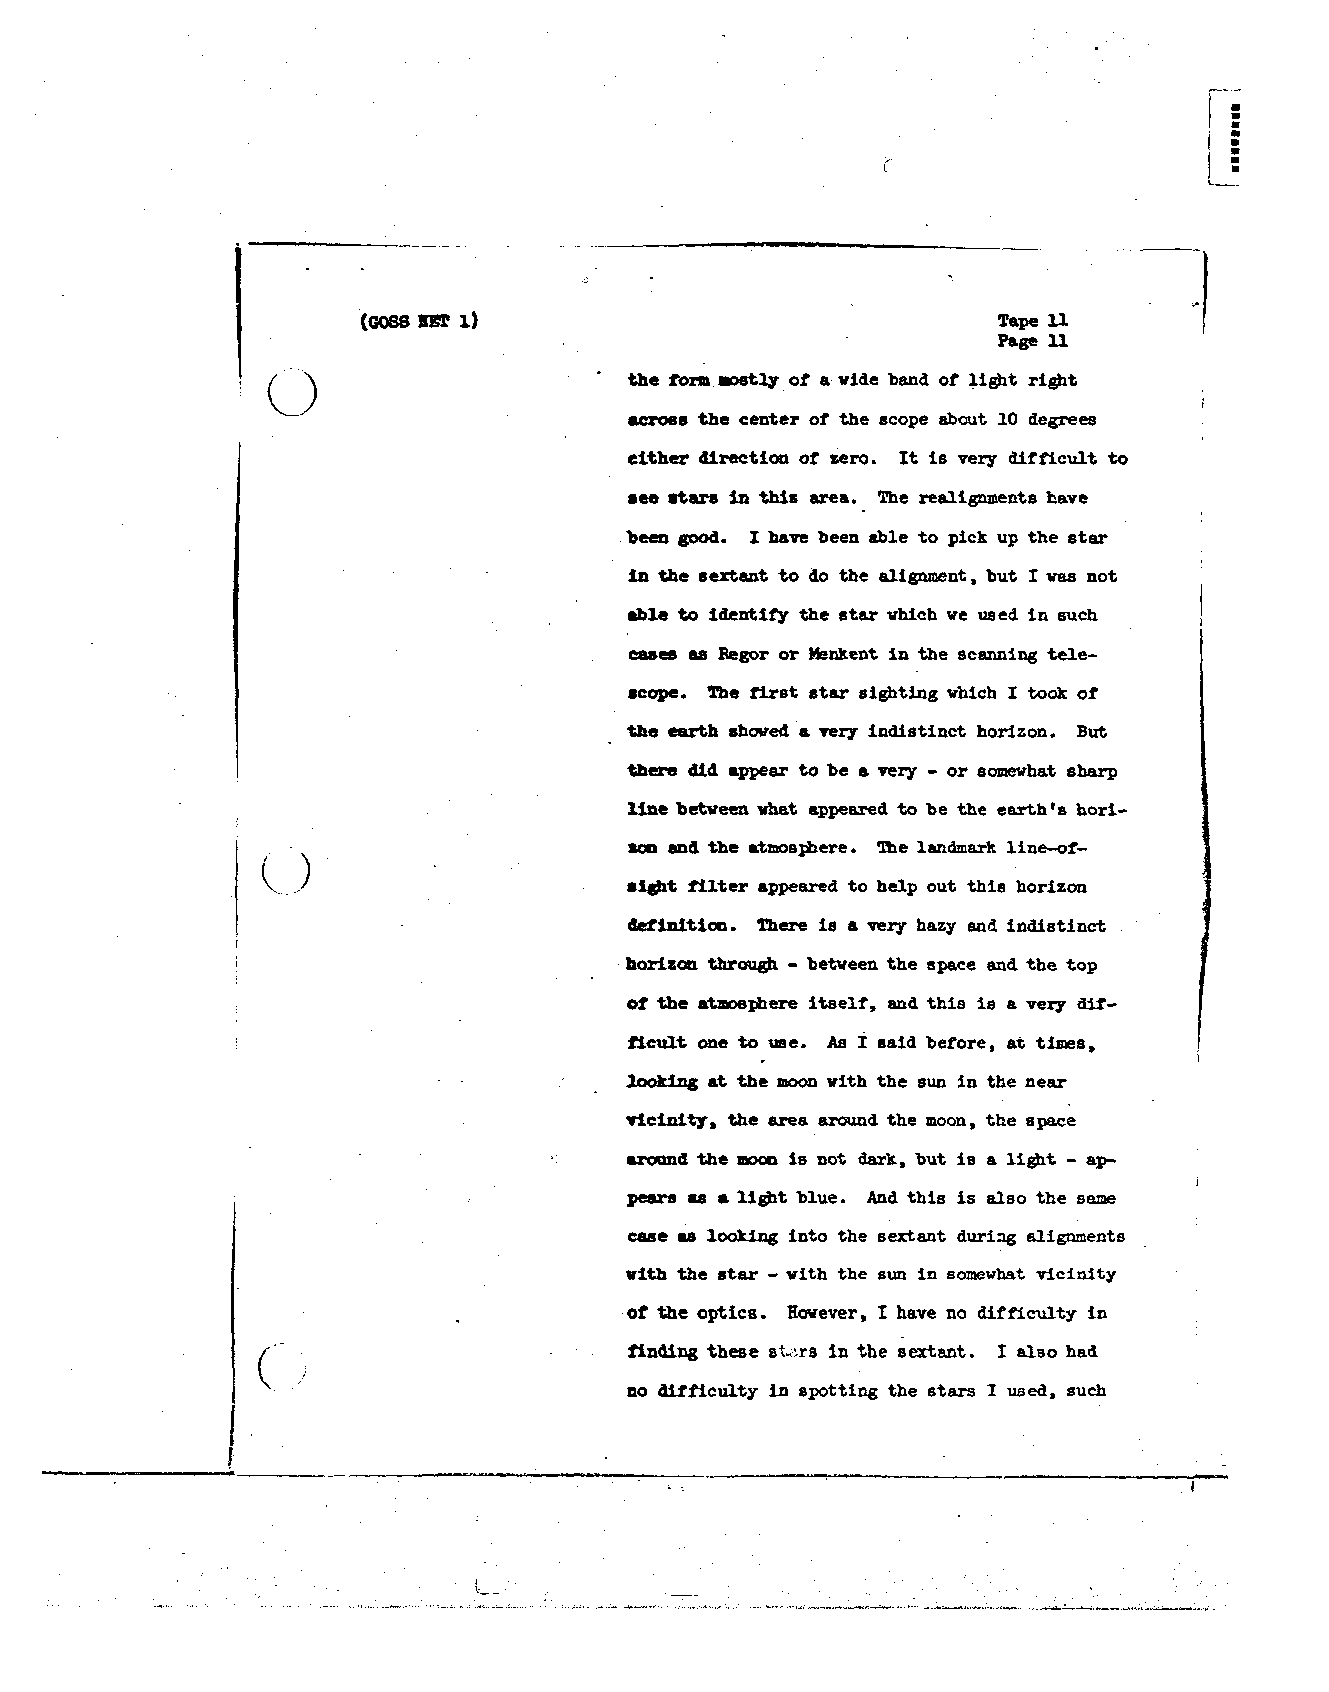 Page 113 of Apollo 8’s original transcript